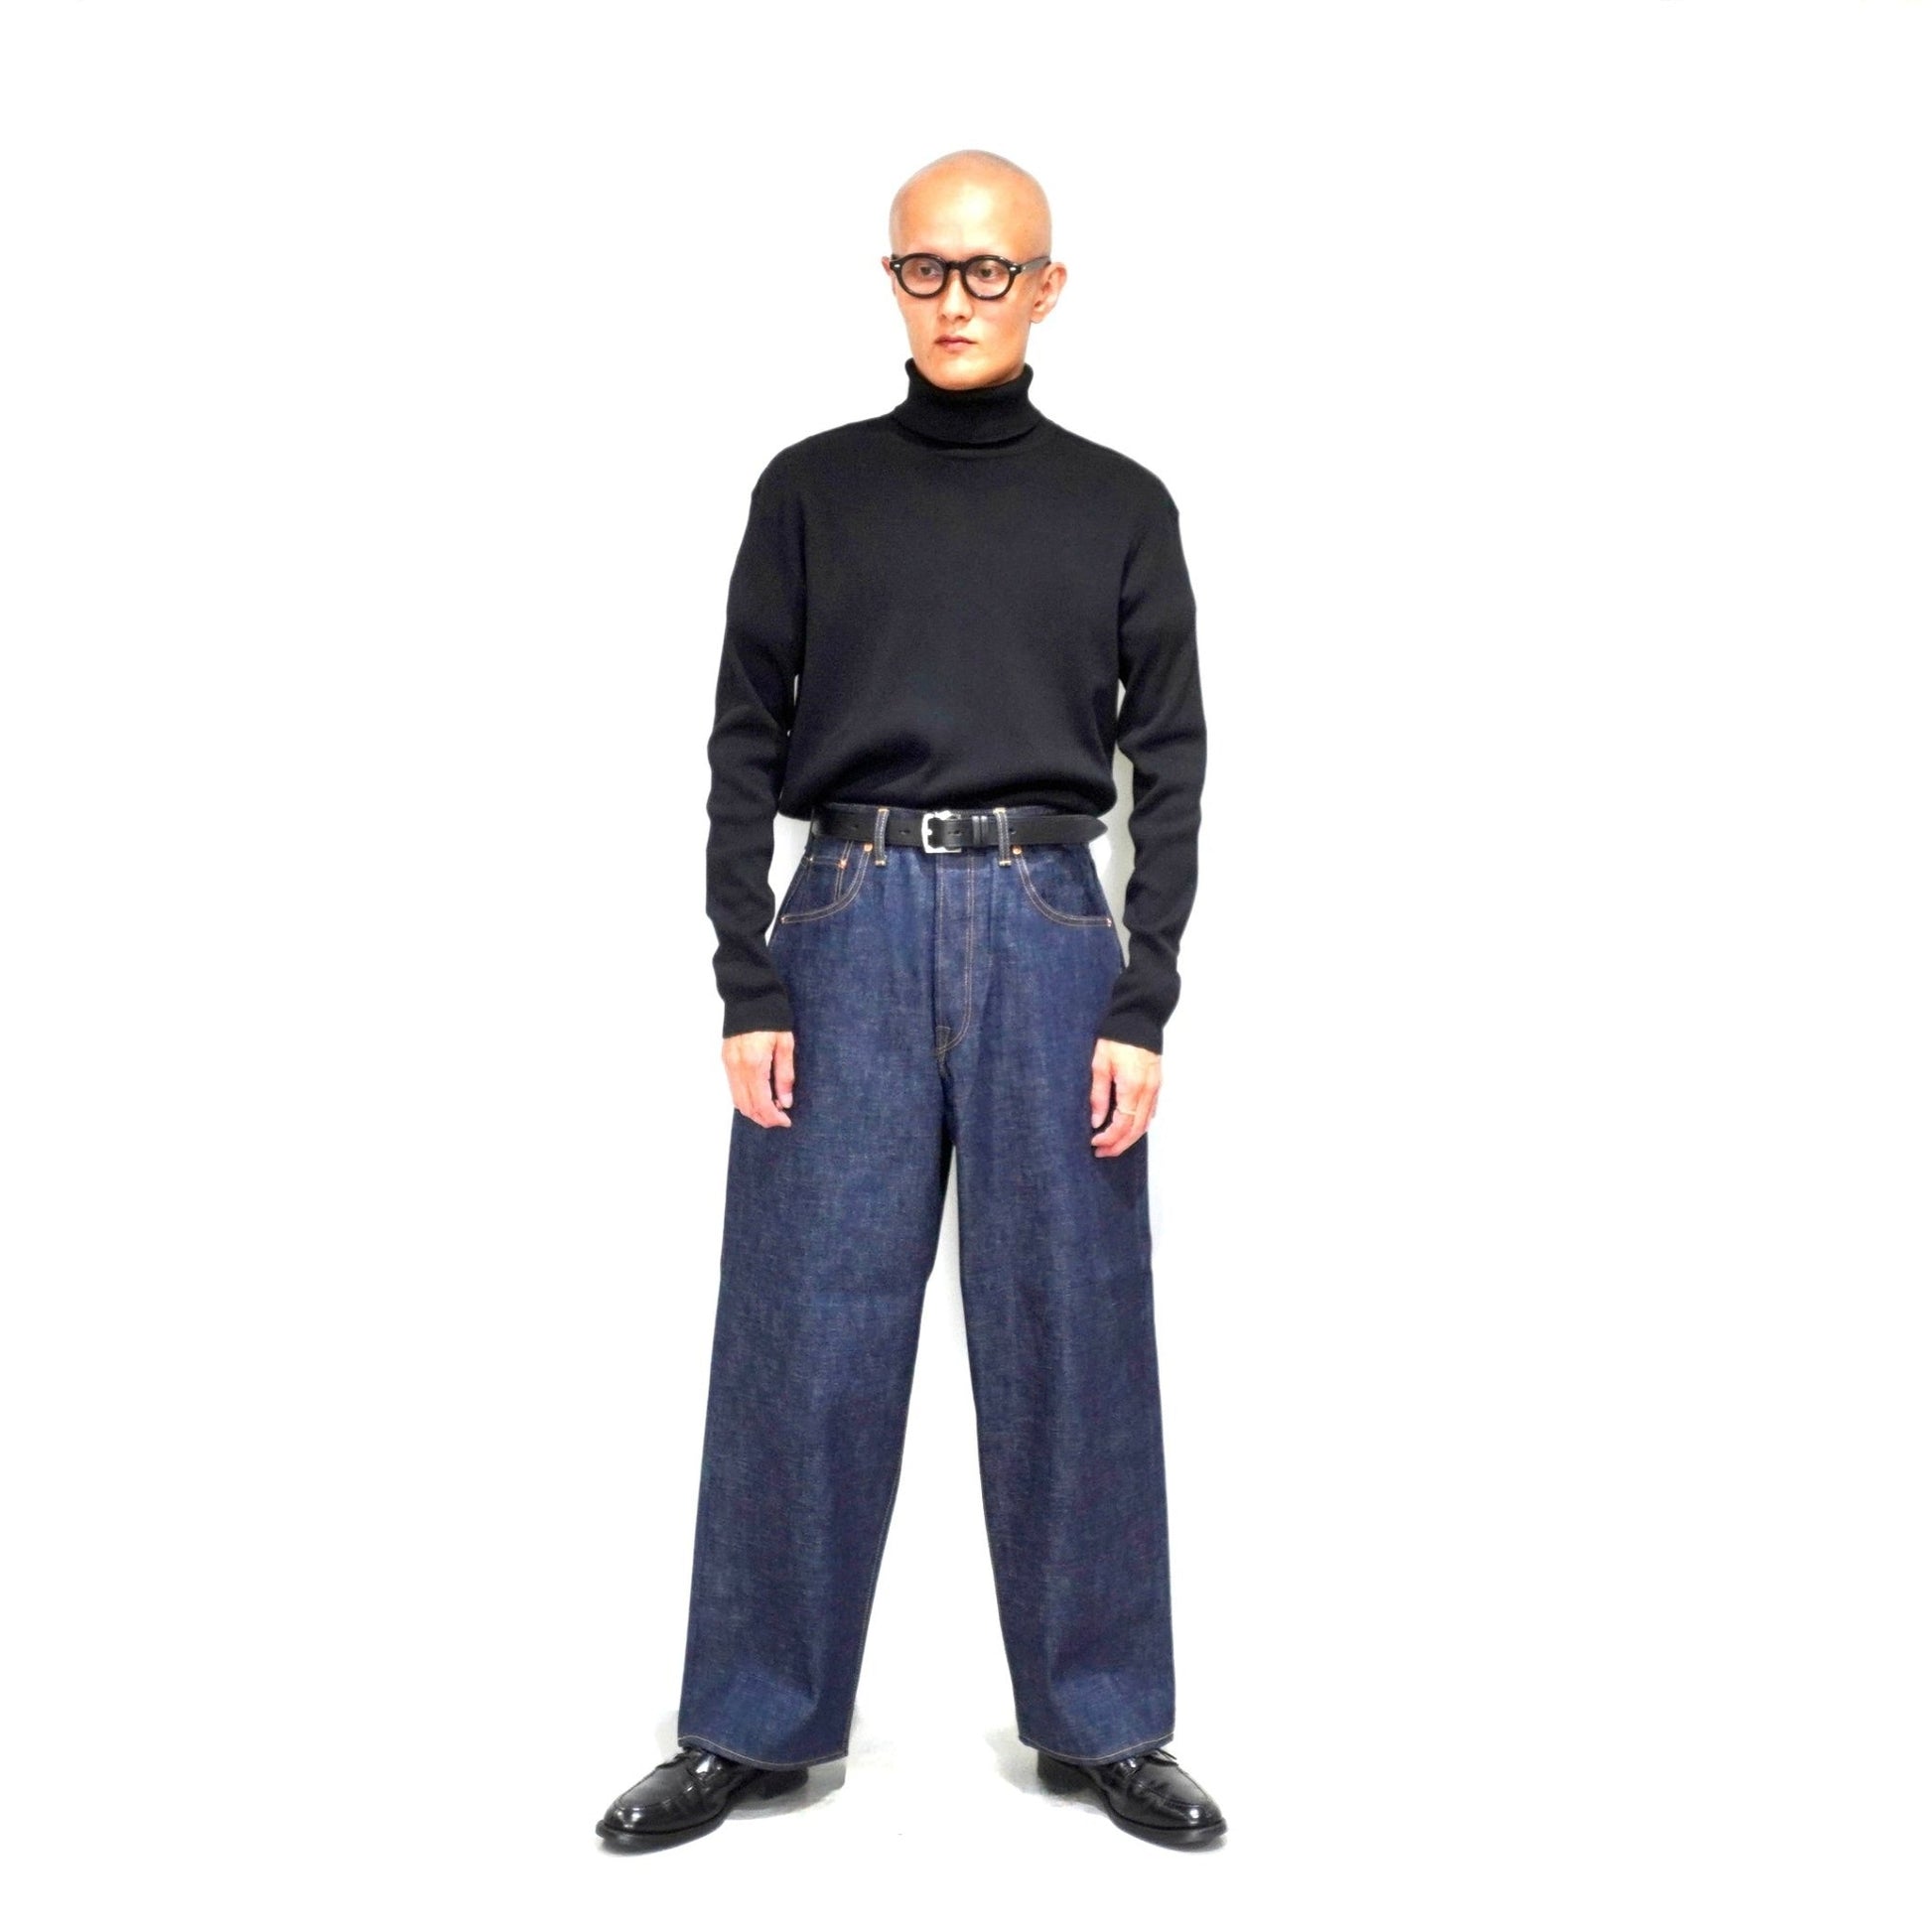 [SCYE BASICS] Wide Leg Jeans デニムパンツ - #shop_name #アパルティール# #名古屋# #セレクトショップ#